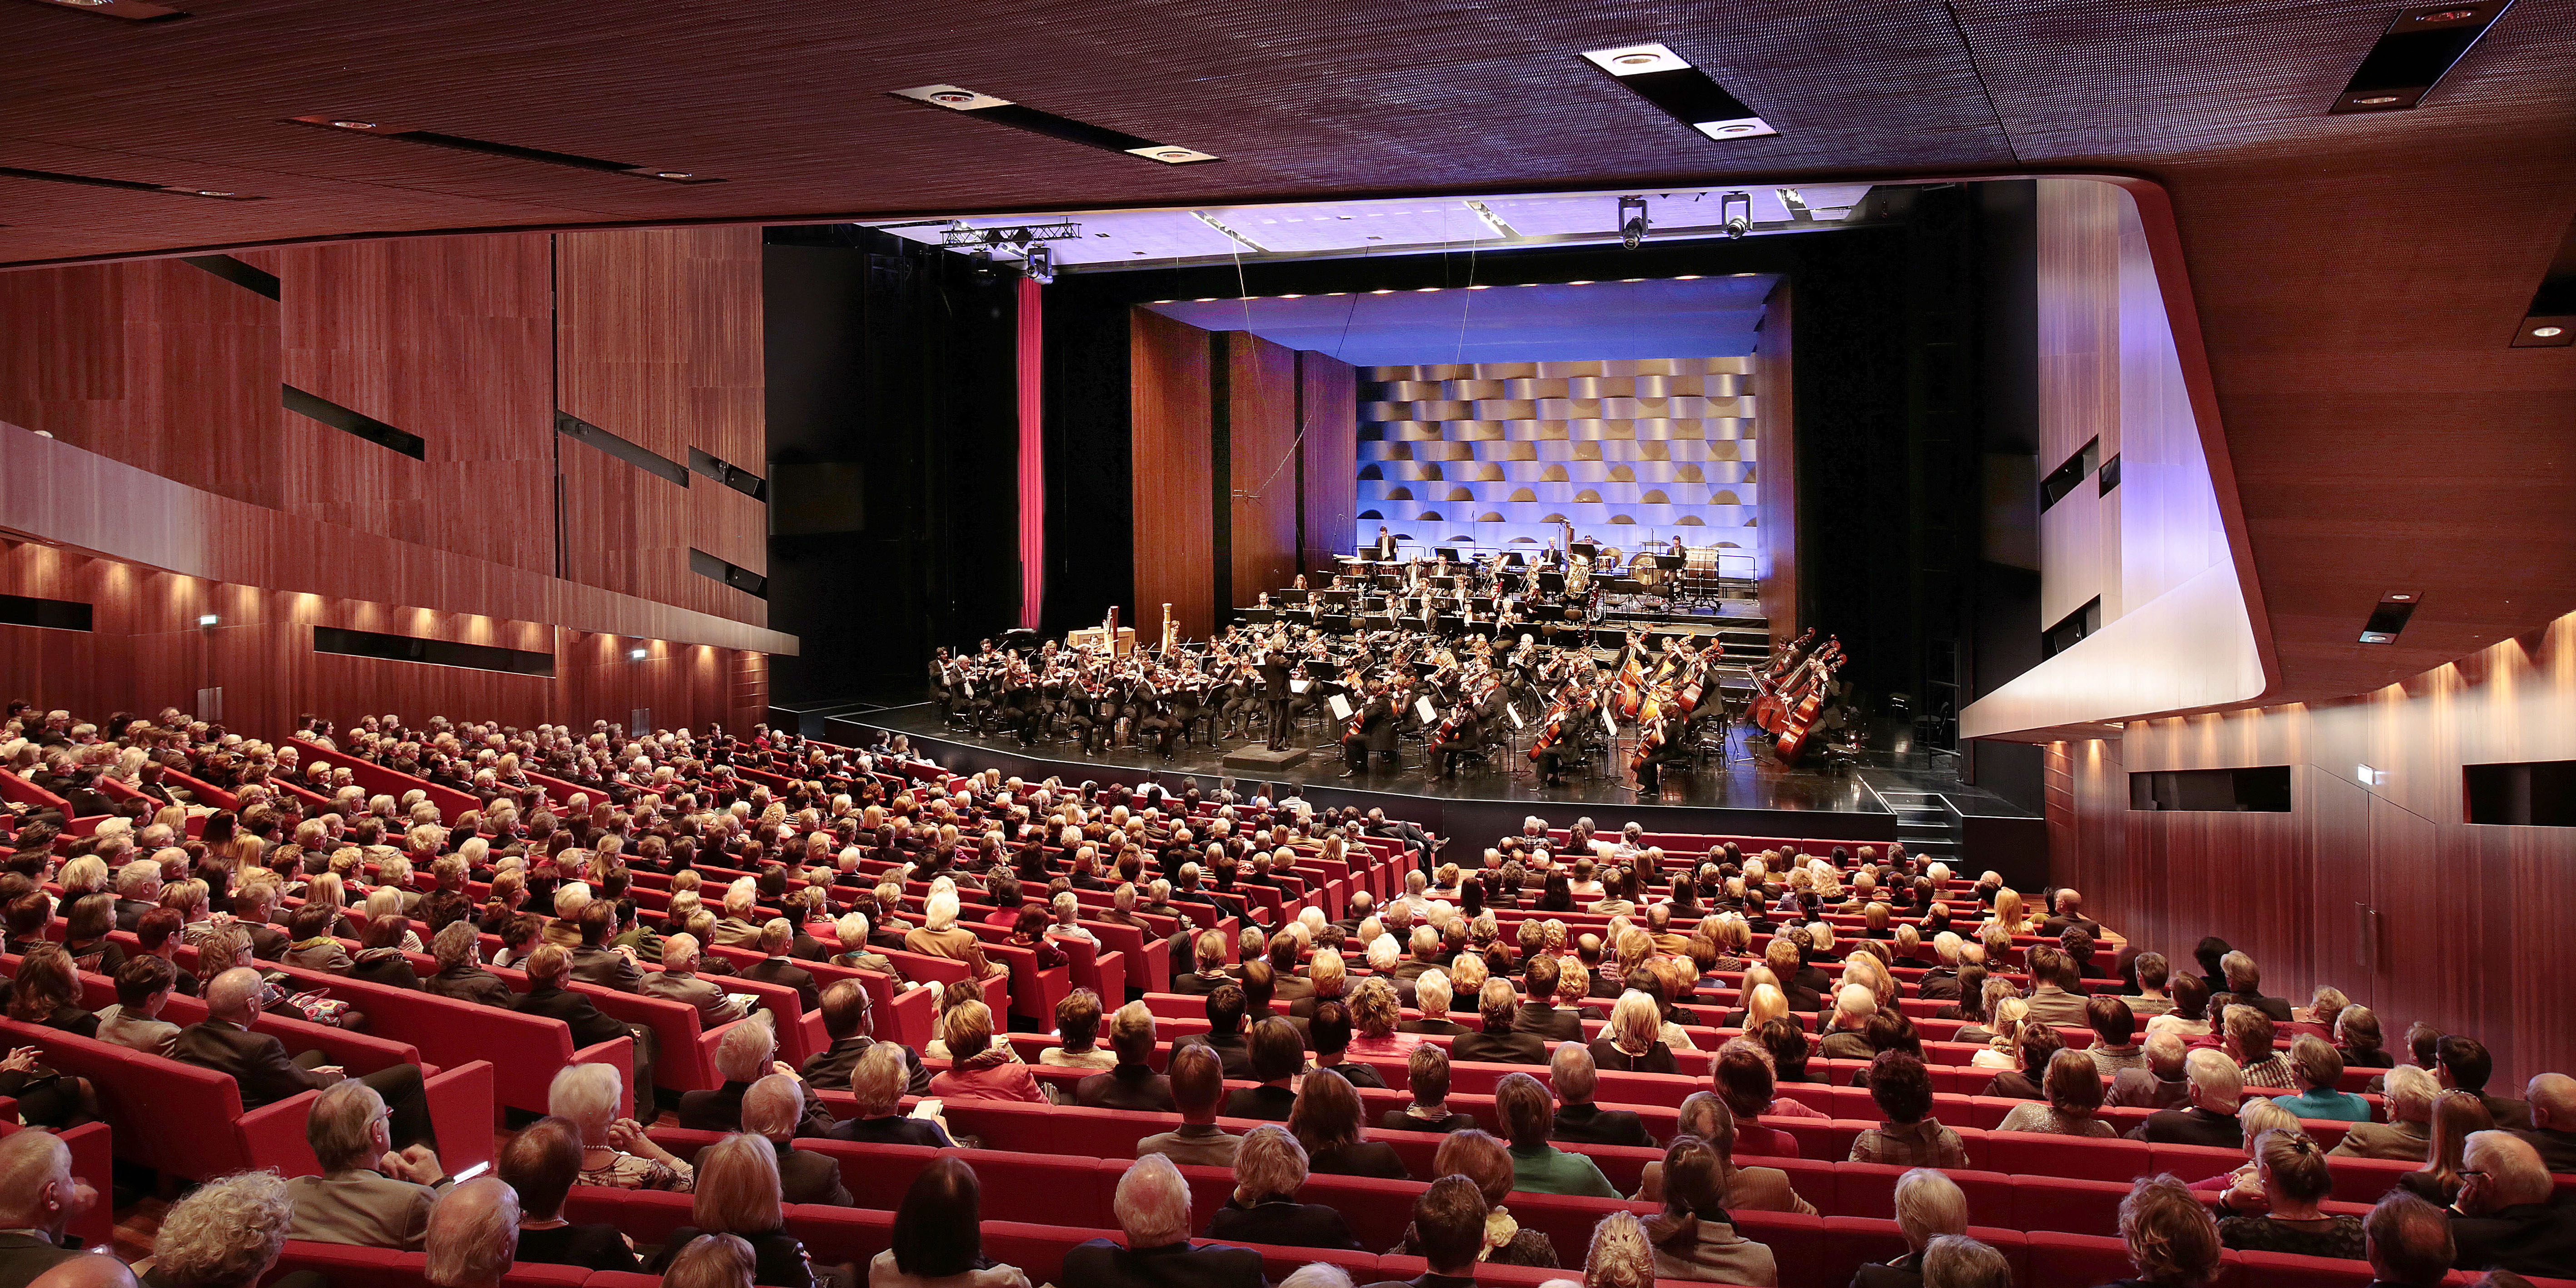 Orchesterkonzert im Festspielhaus Bregenz